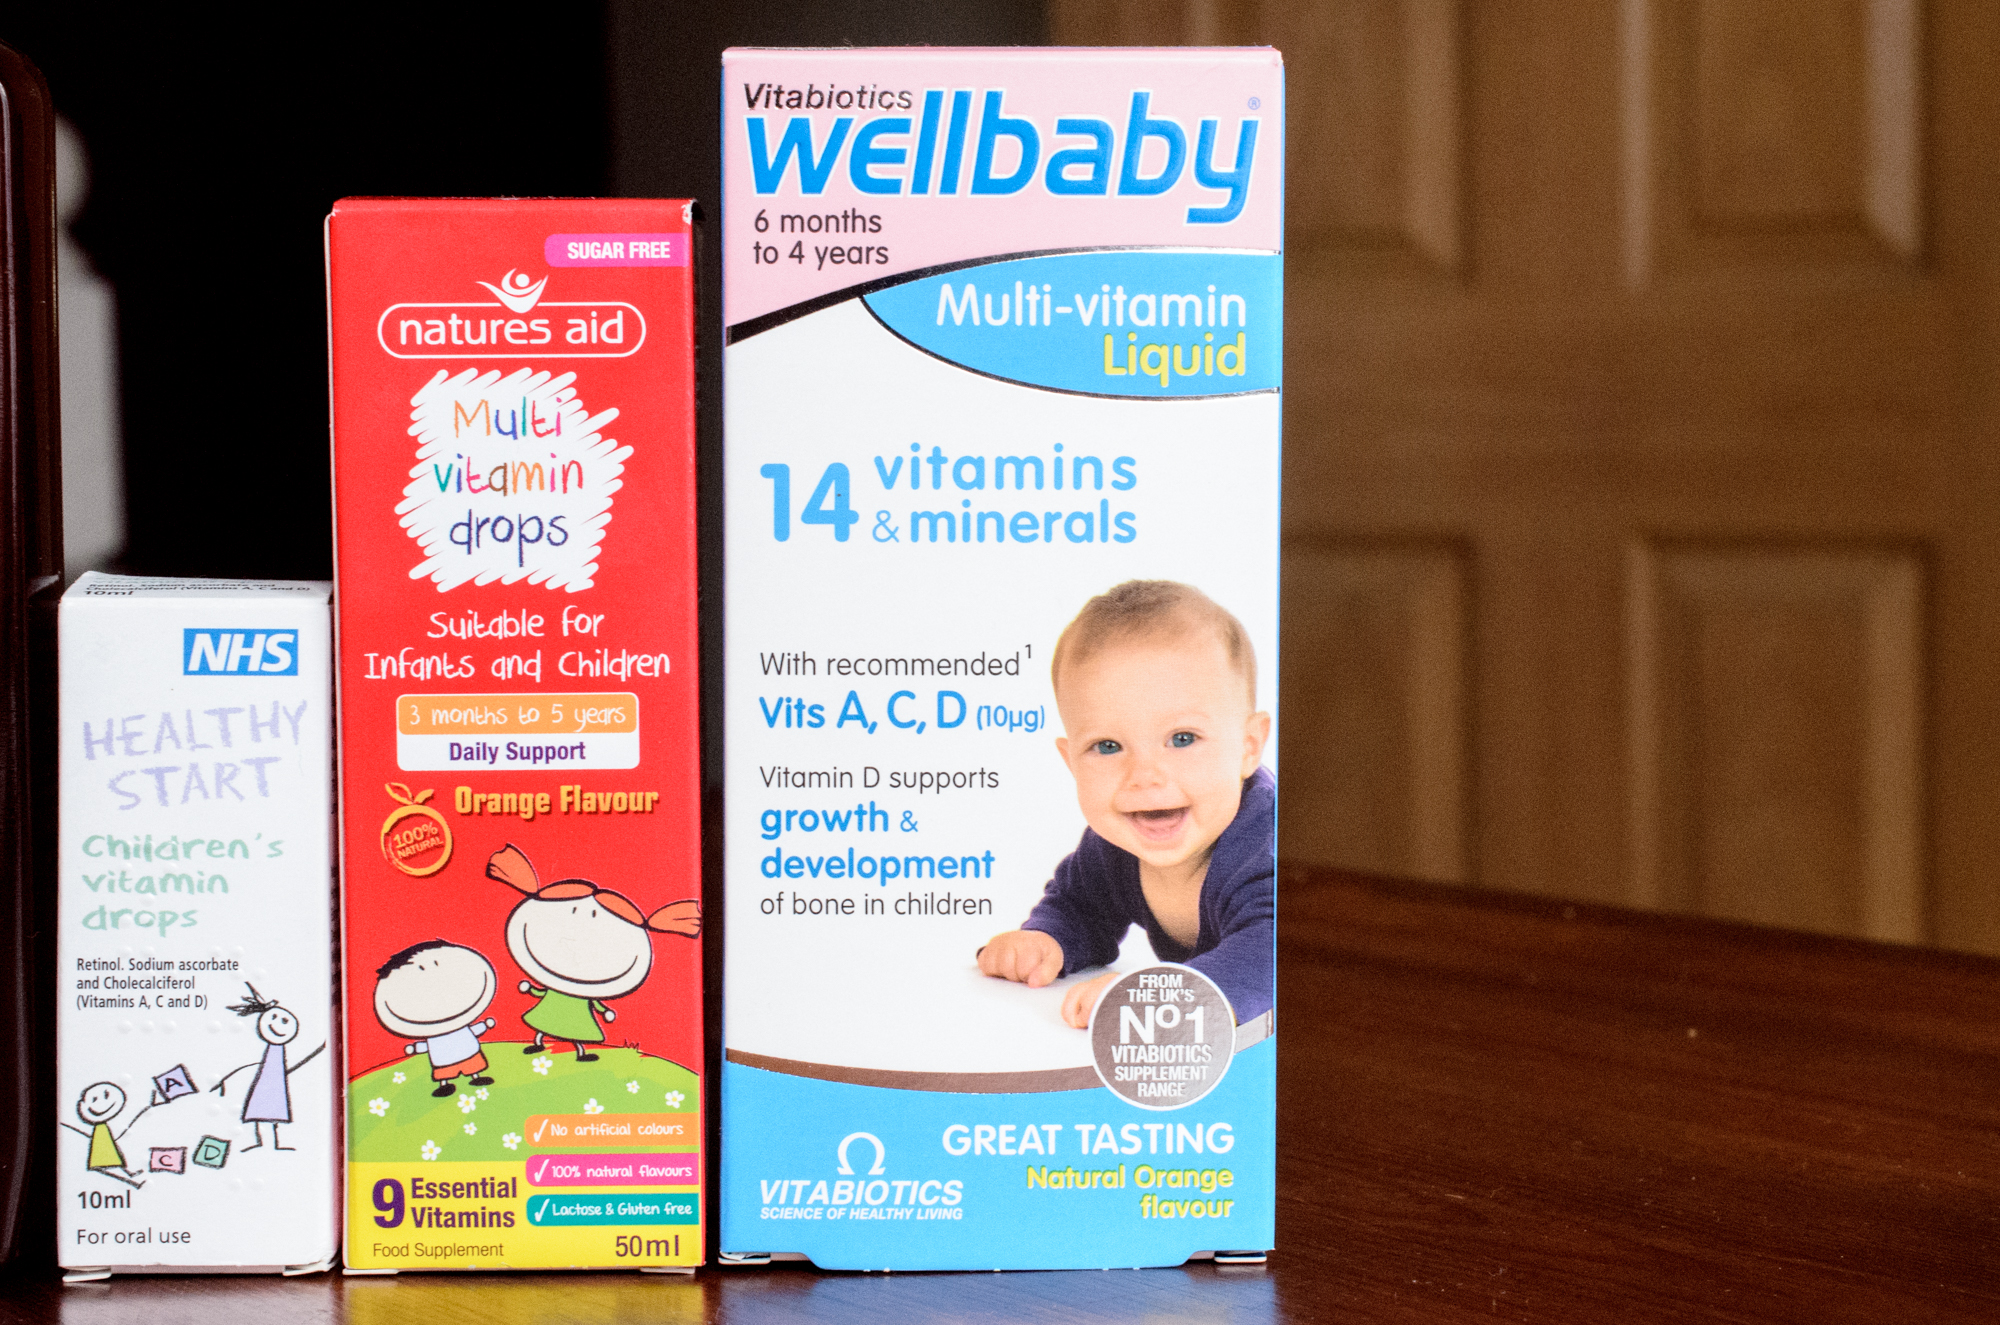 Wellbaby multi-vitamin liquid